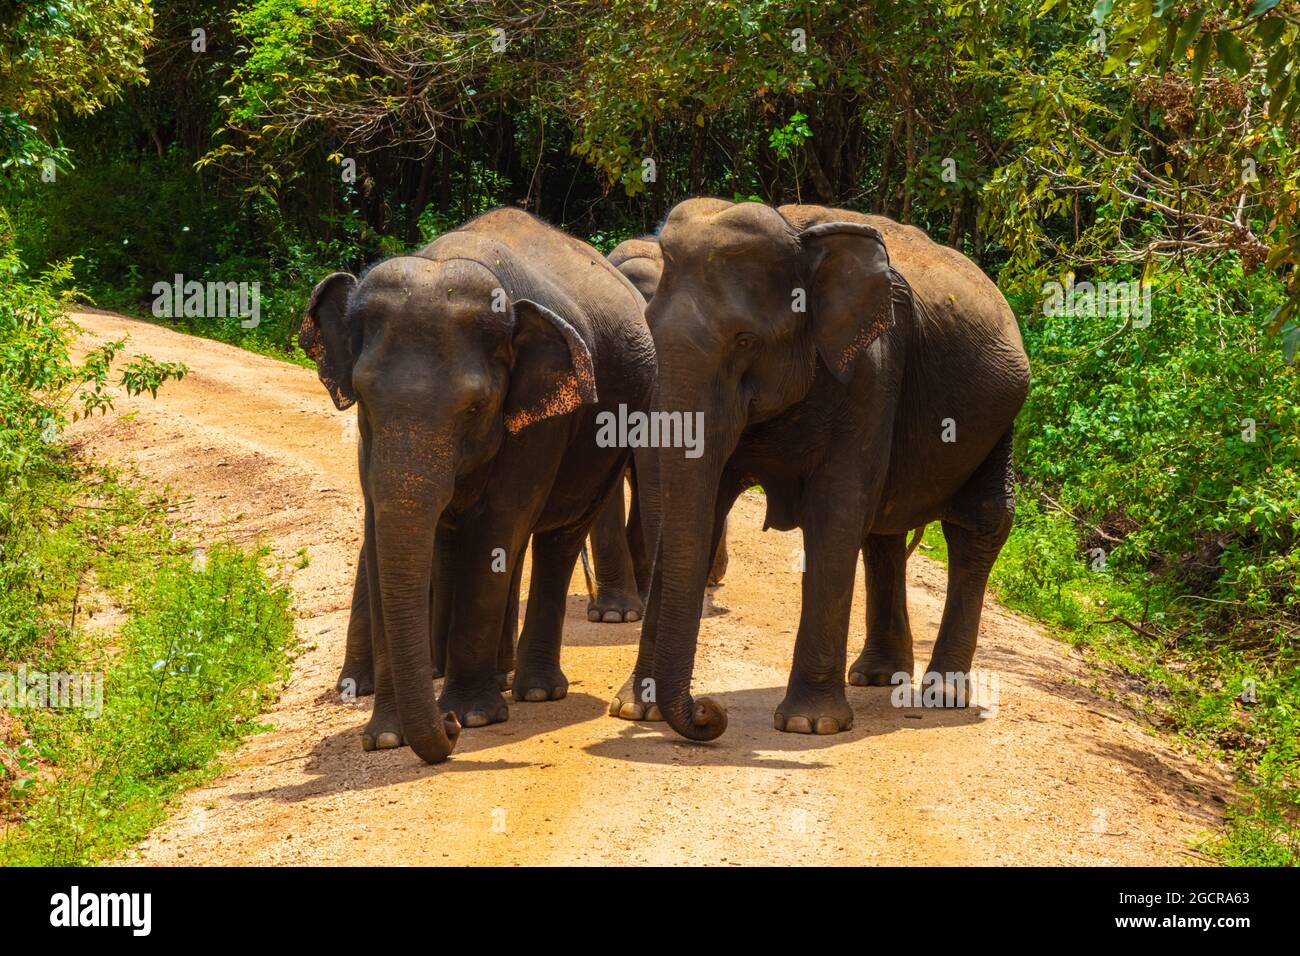 Freie wilde Elefanten im Nationalpark Minniya, Sri Lanka. Elefantenherde, die über einen nicht versiegelten Pfad geht, bevor sie im Busch der ra zurückwandern Stockfoto